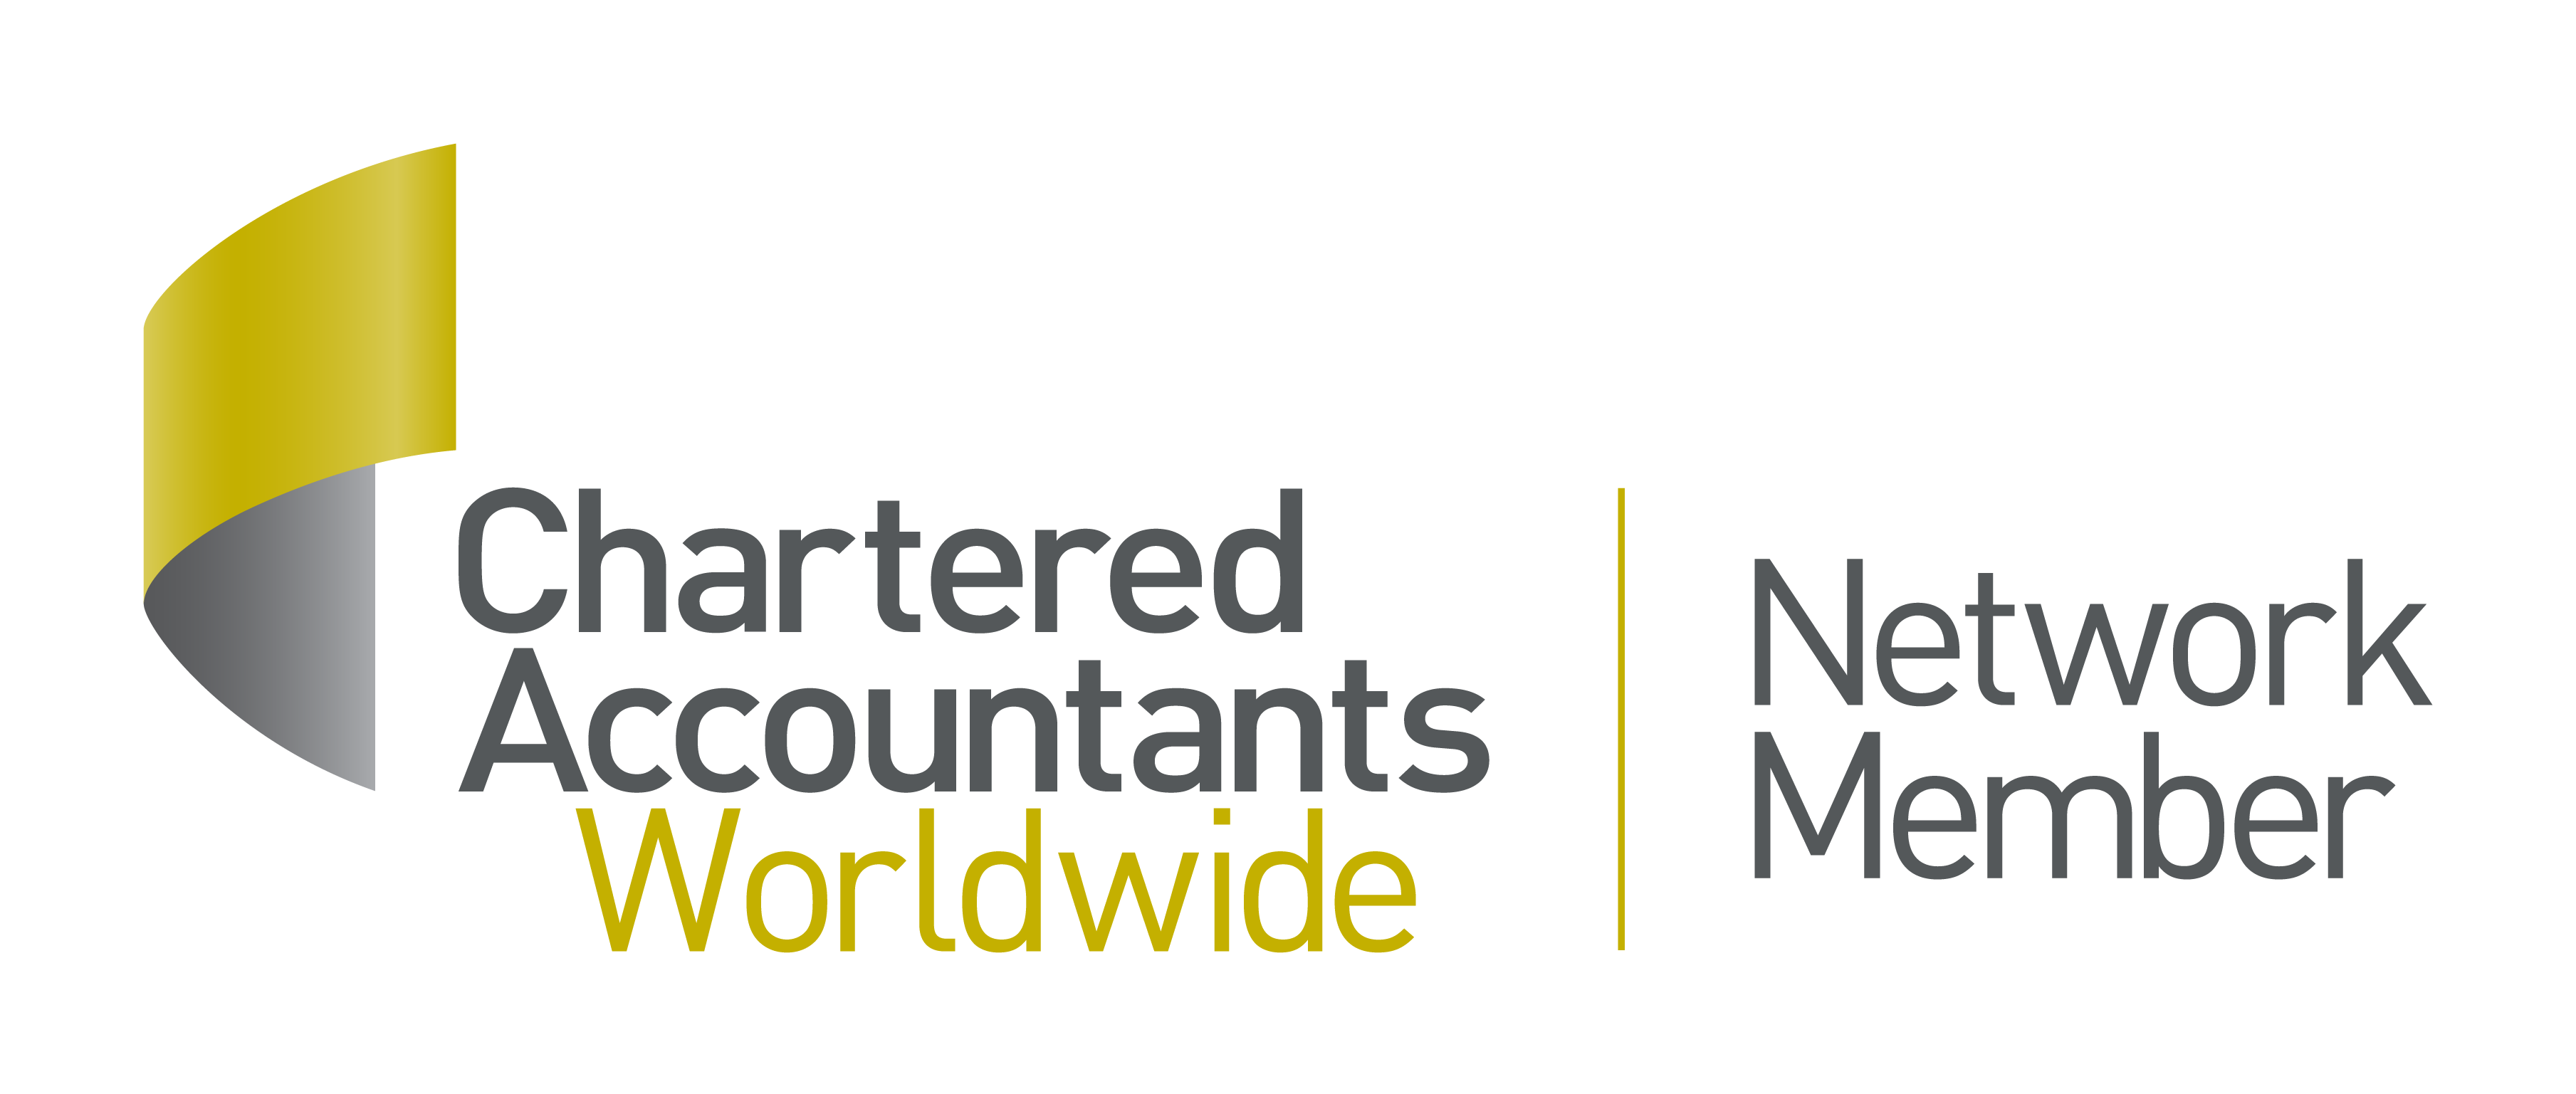 Chartered Accountants Worldwide Network